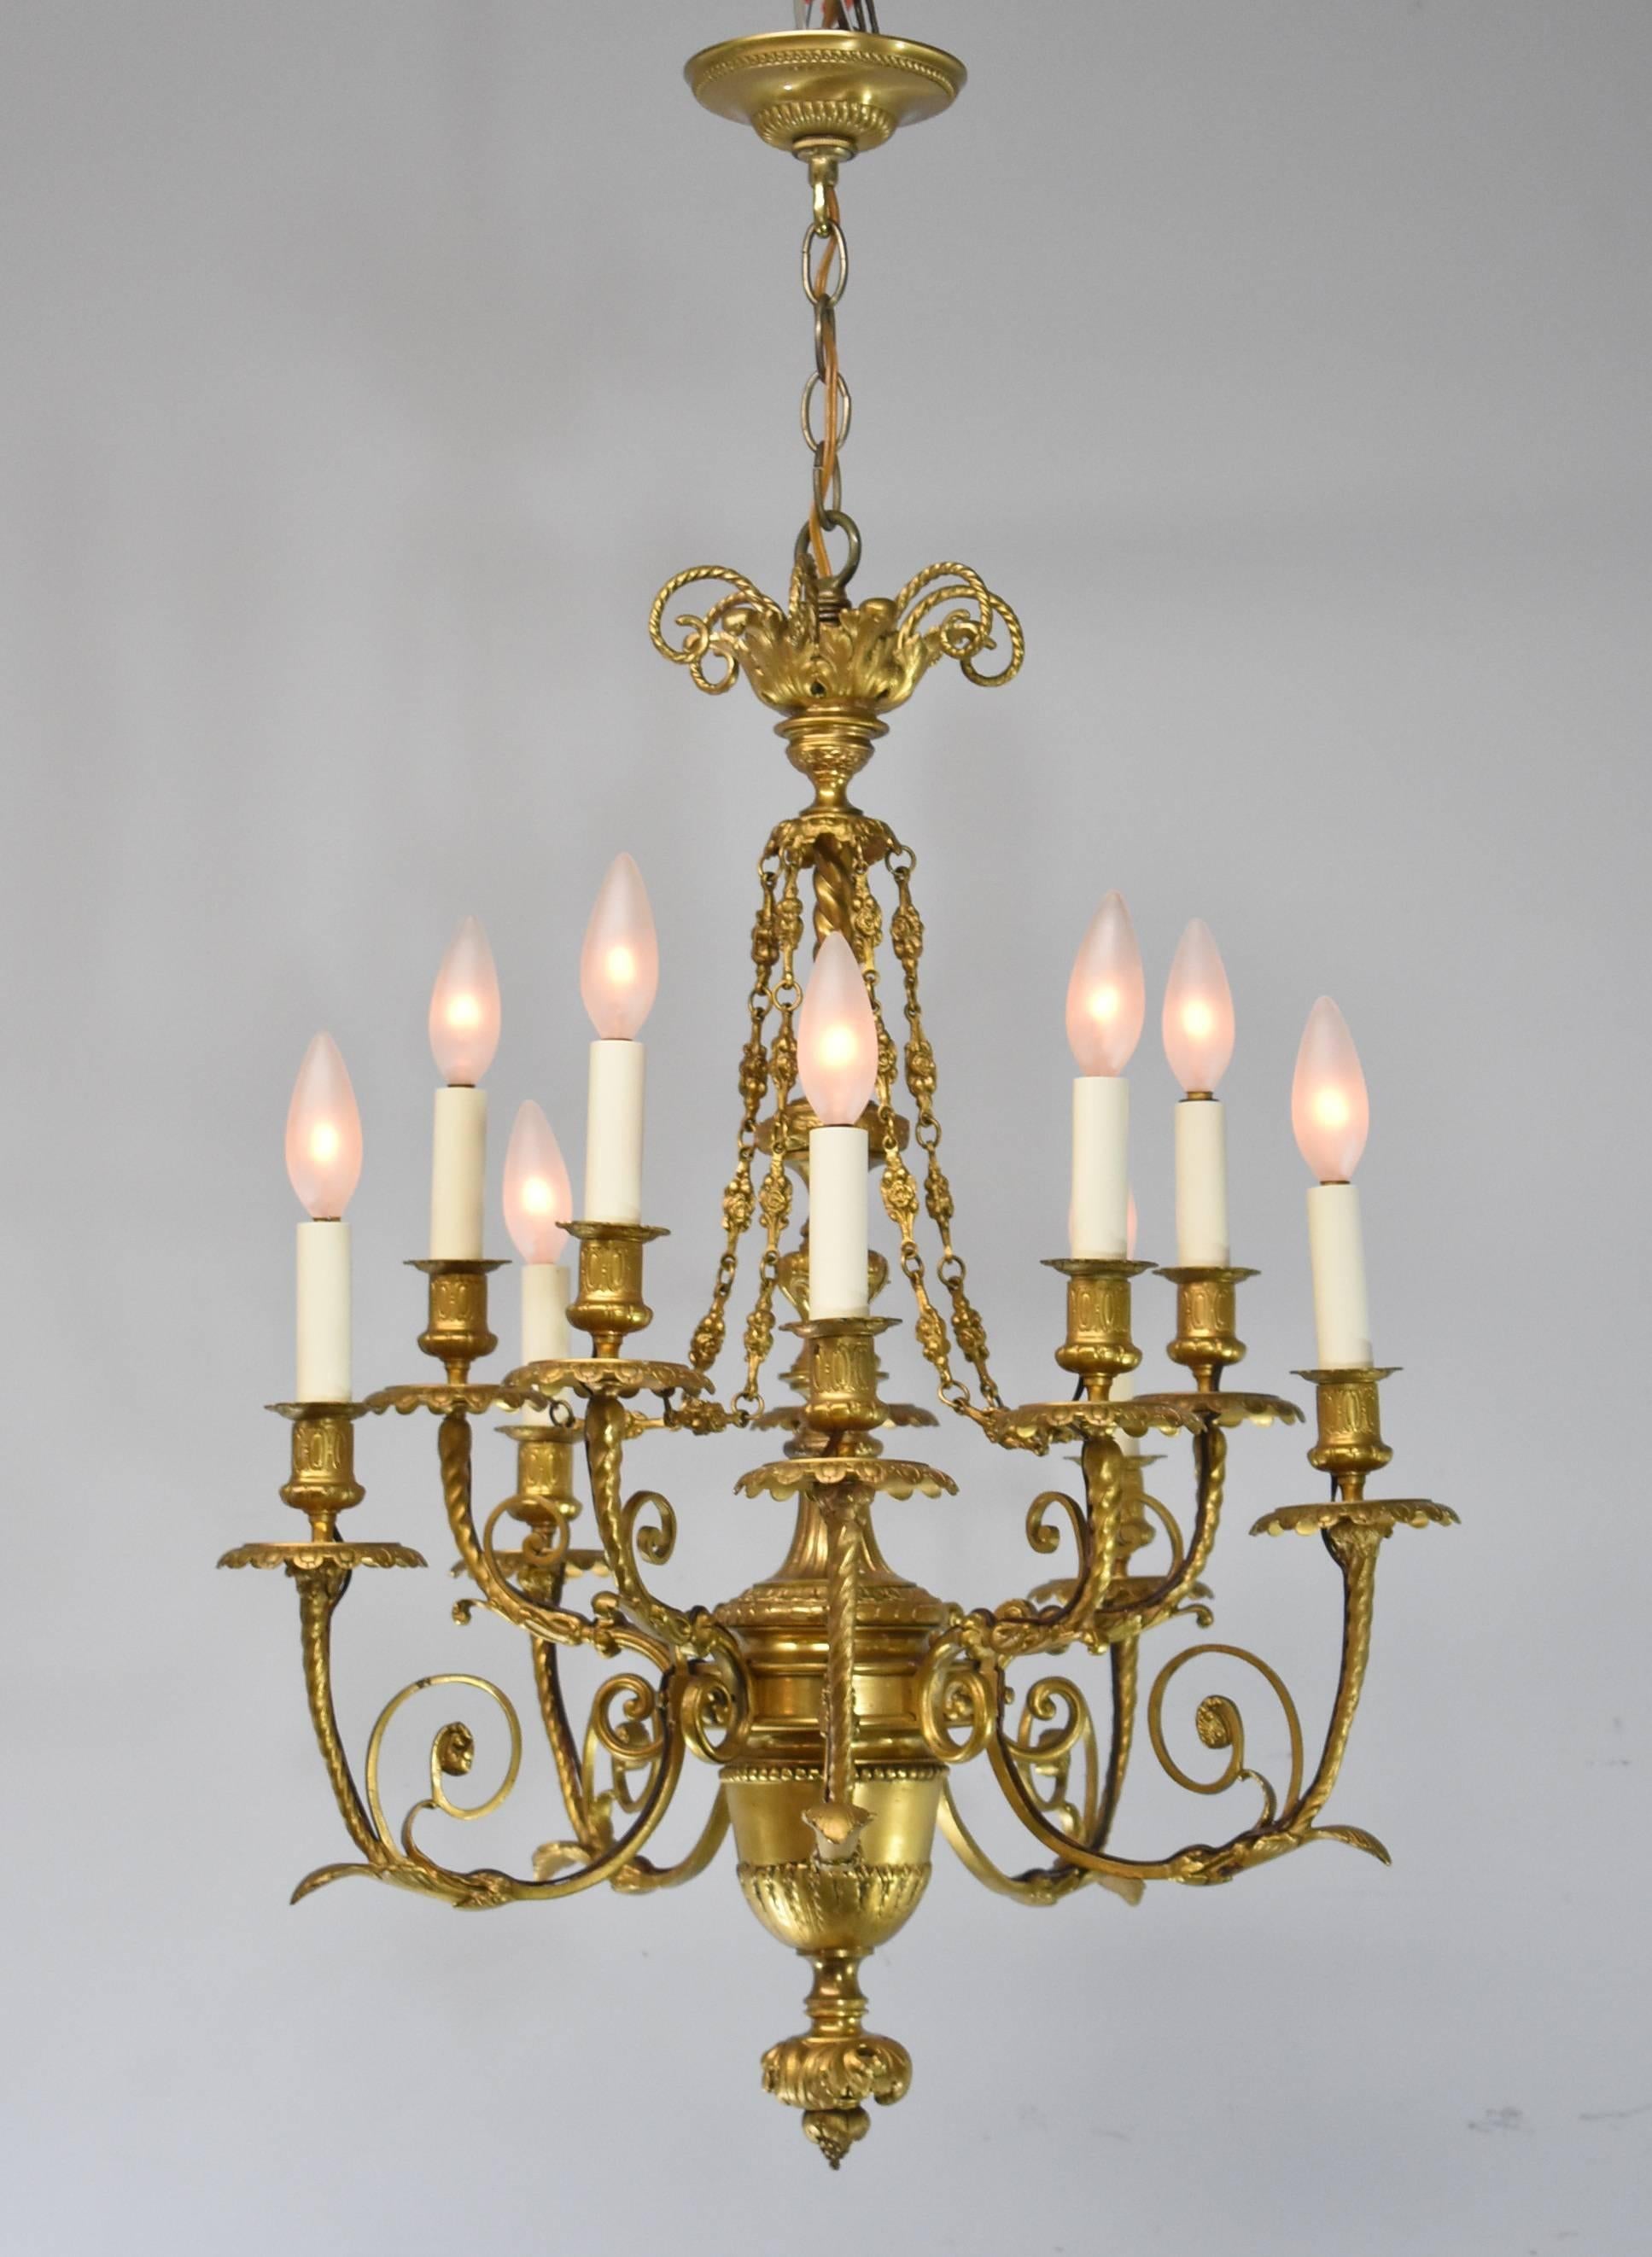 Beeindruckender zehnarmiger Kronleuchter im französischen Stil aus Bronze mit Gold-Doré-Finish. Verschnörkelter Swag und Rosendetails an der Kette. Die Lampenschirme sind nicht enthalten.